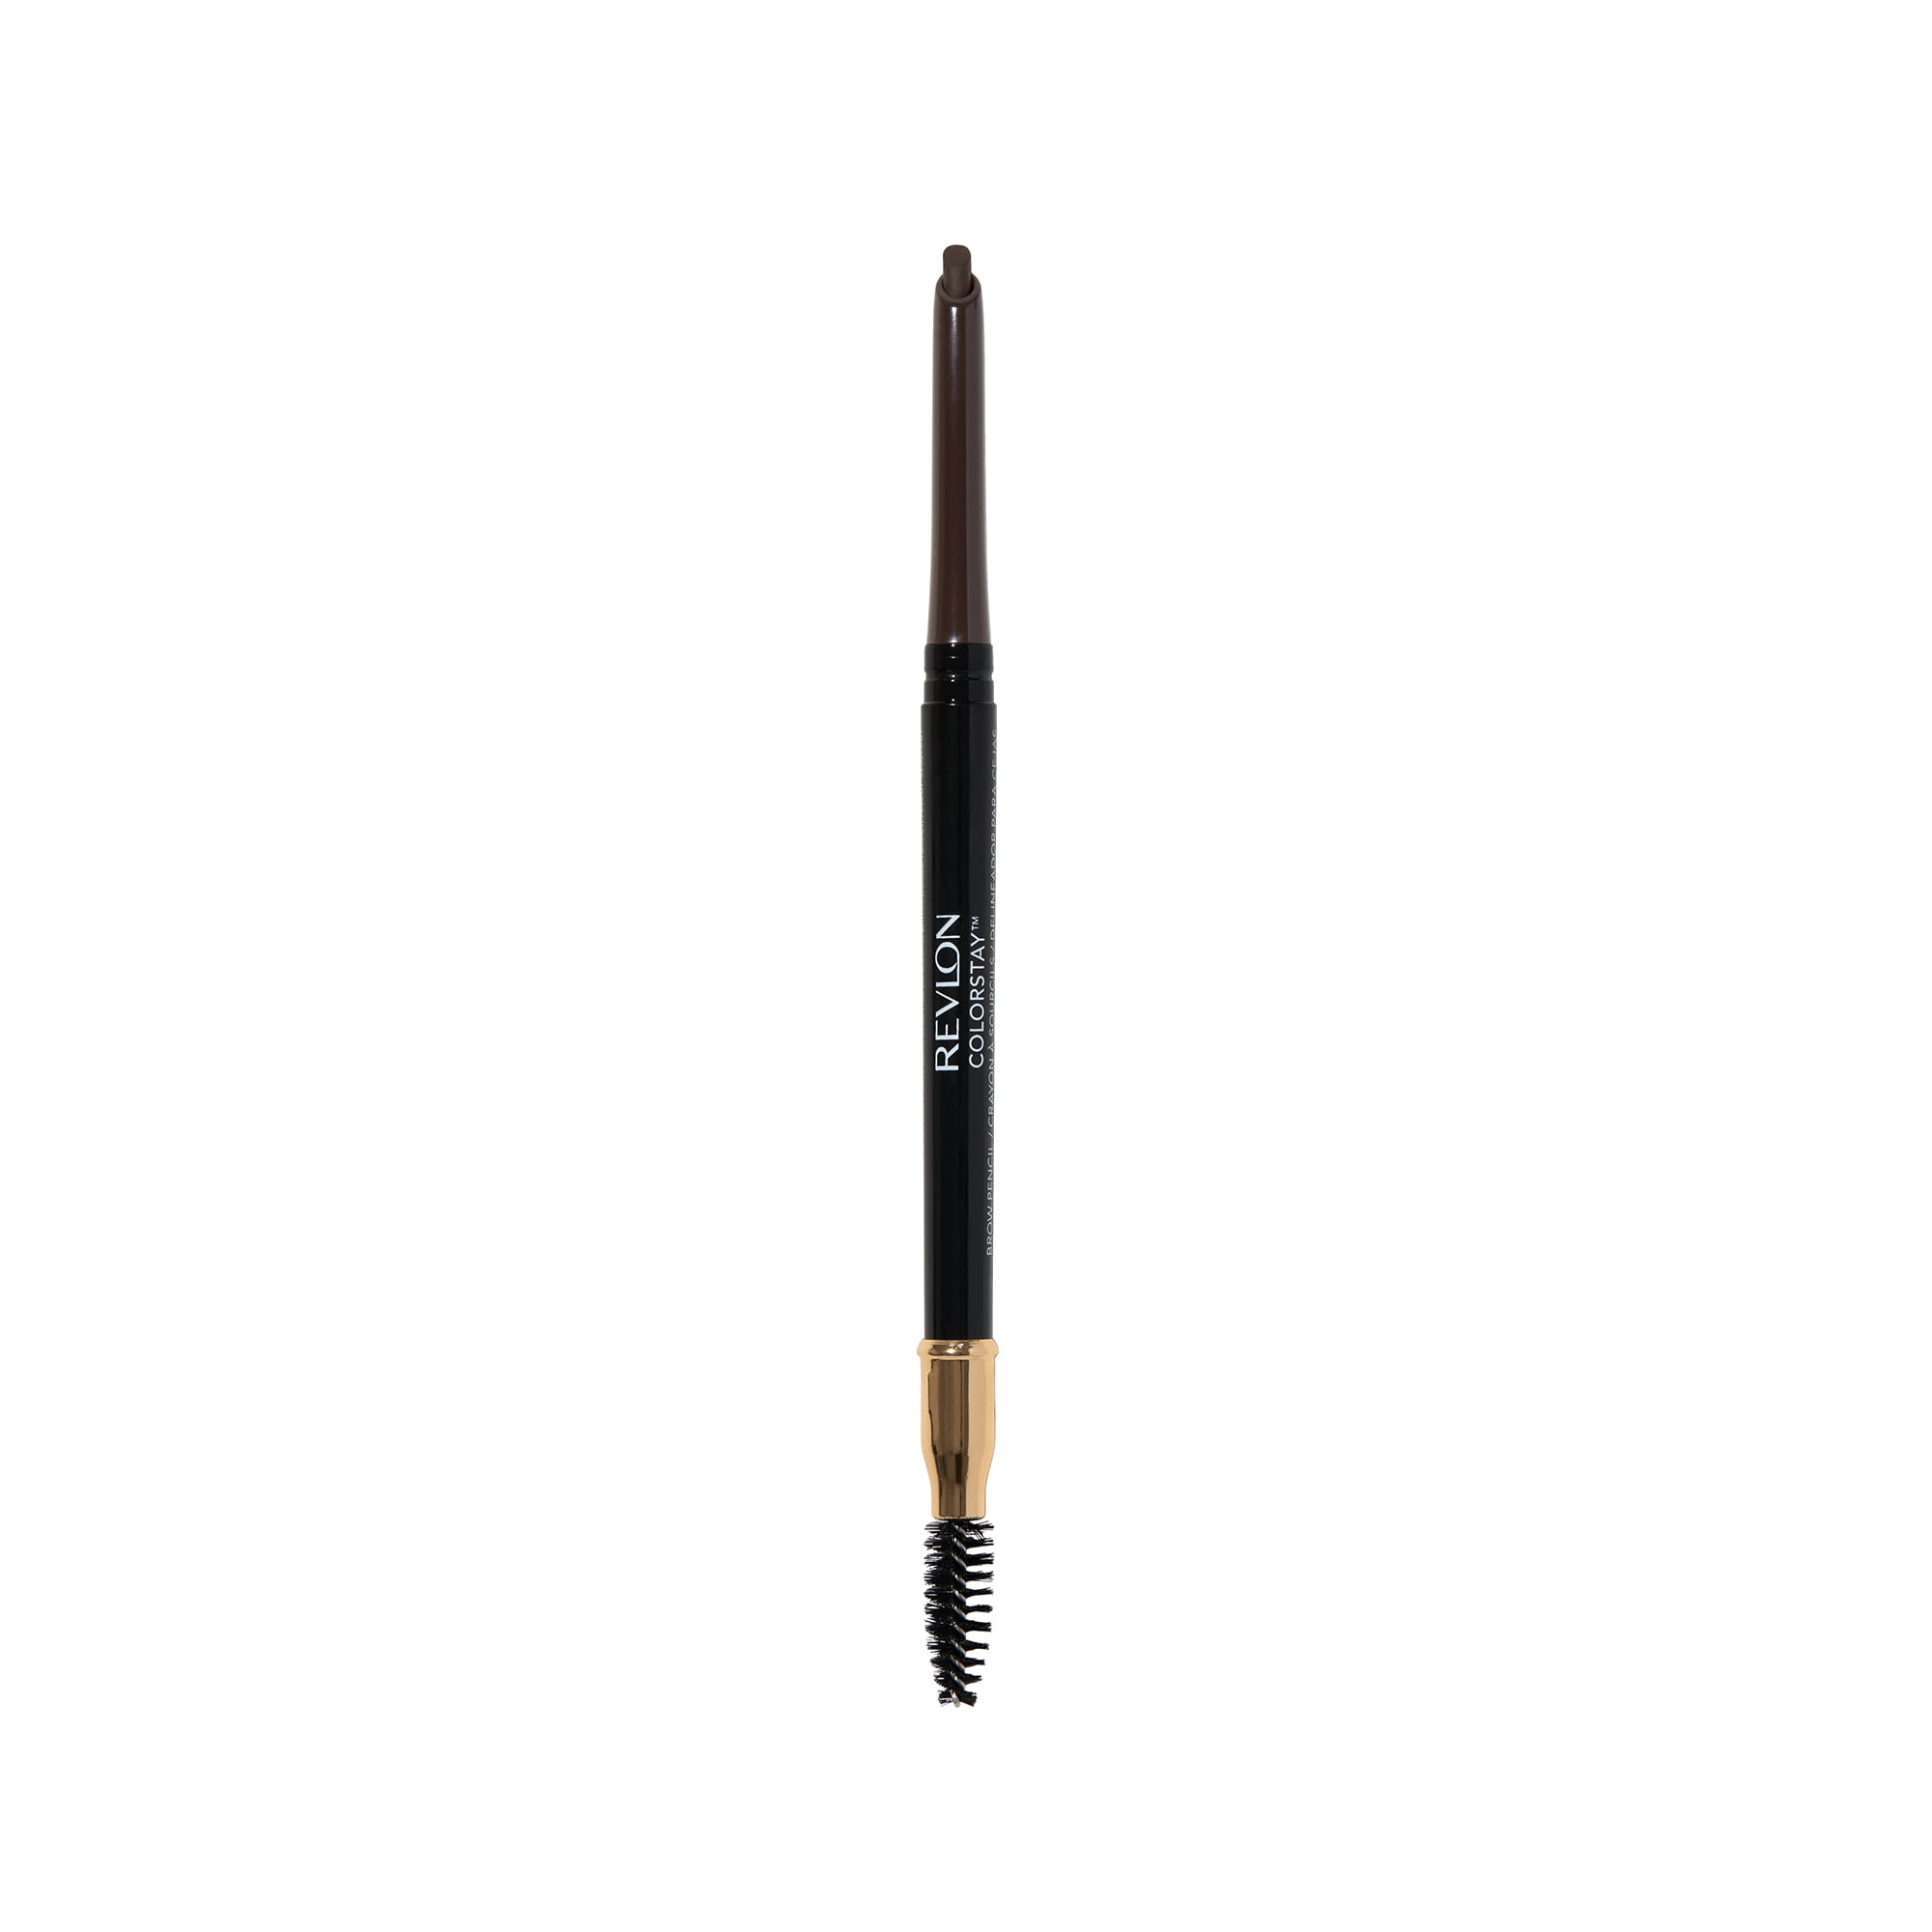 Revlon ColorStay Waterproof Longwearing Eyebrow Pencil, Retractable Angled Tip Applicator, 220 Dark Brown, 0.021 oz